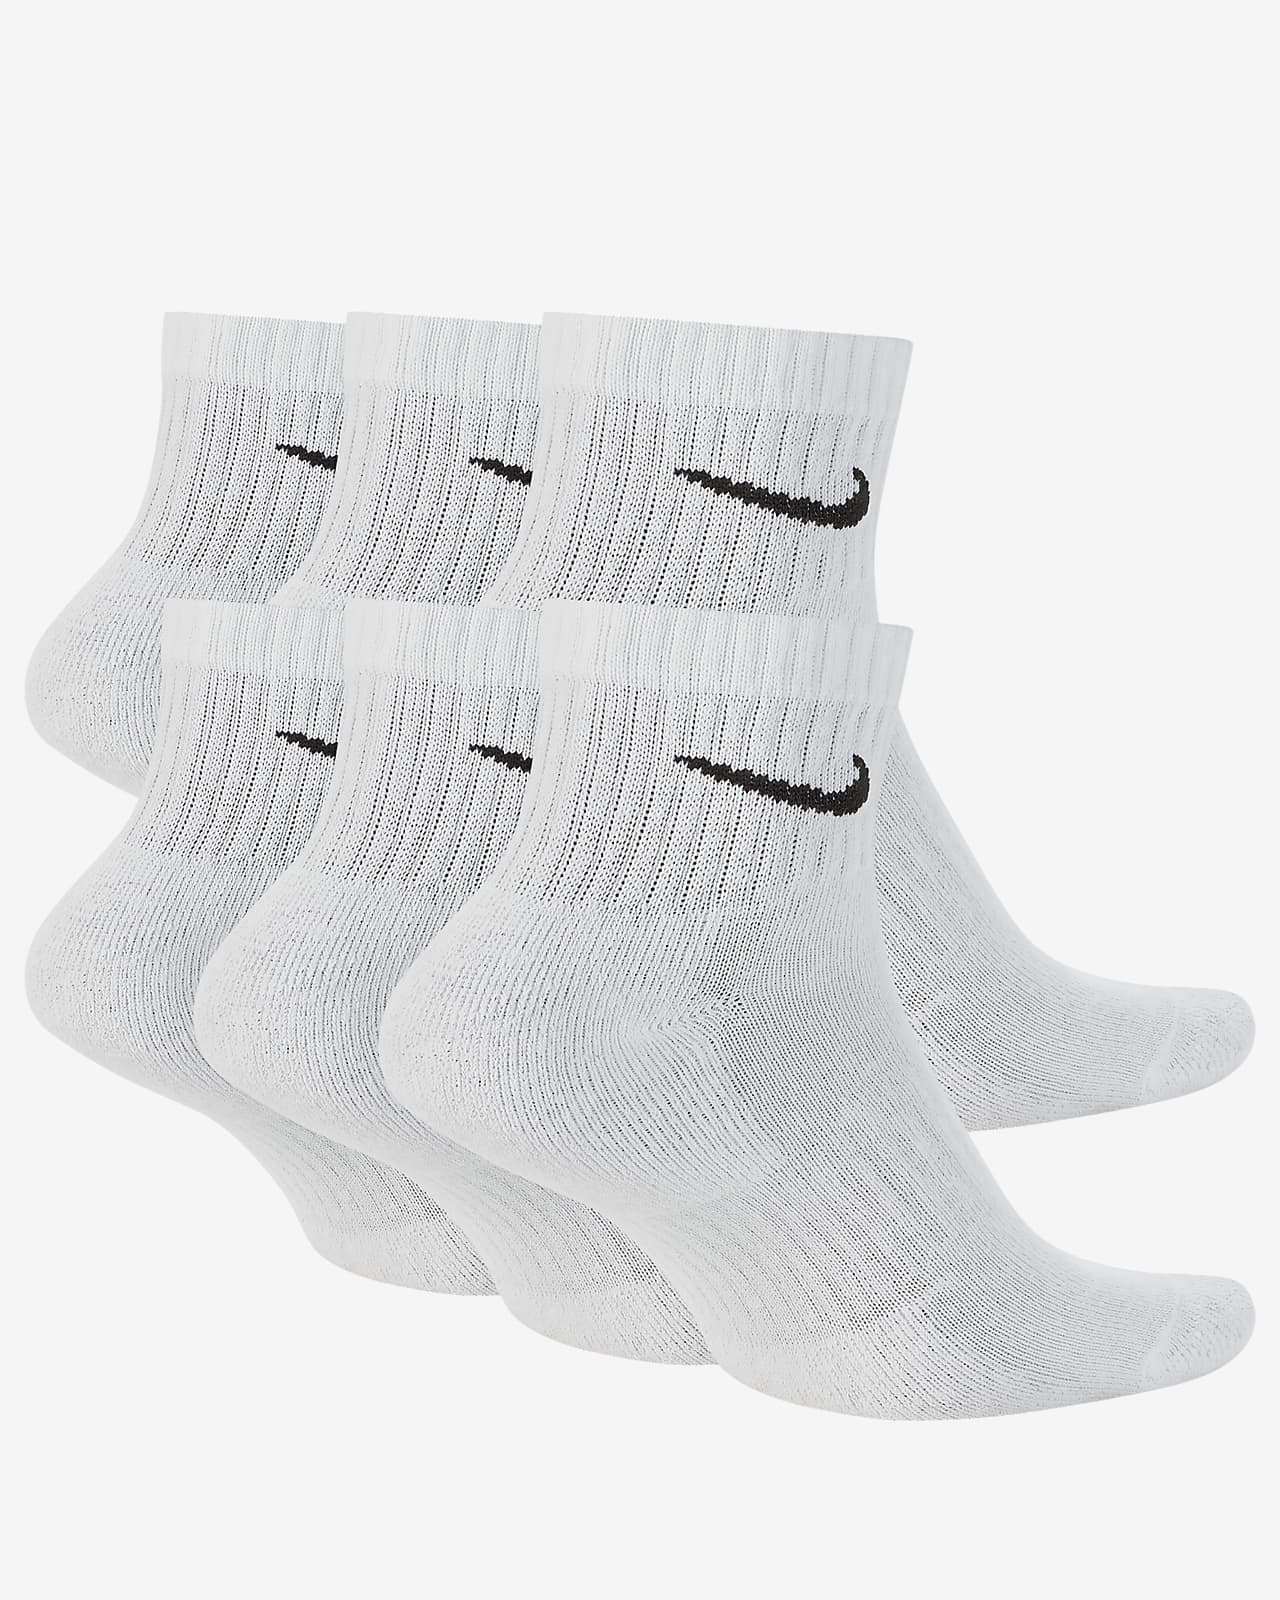 Nike Everyday Cushioned Training Ankle Socks (6 Pairs). Nike.com